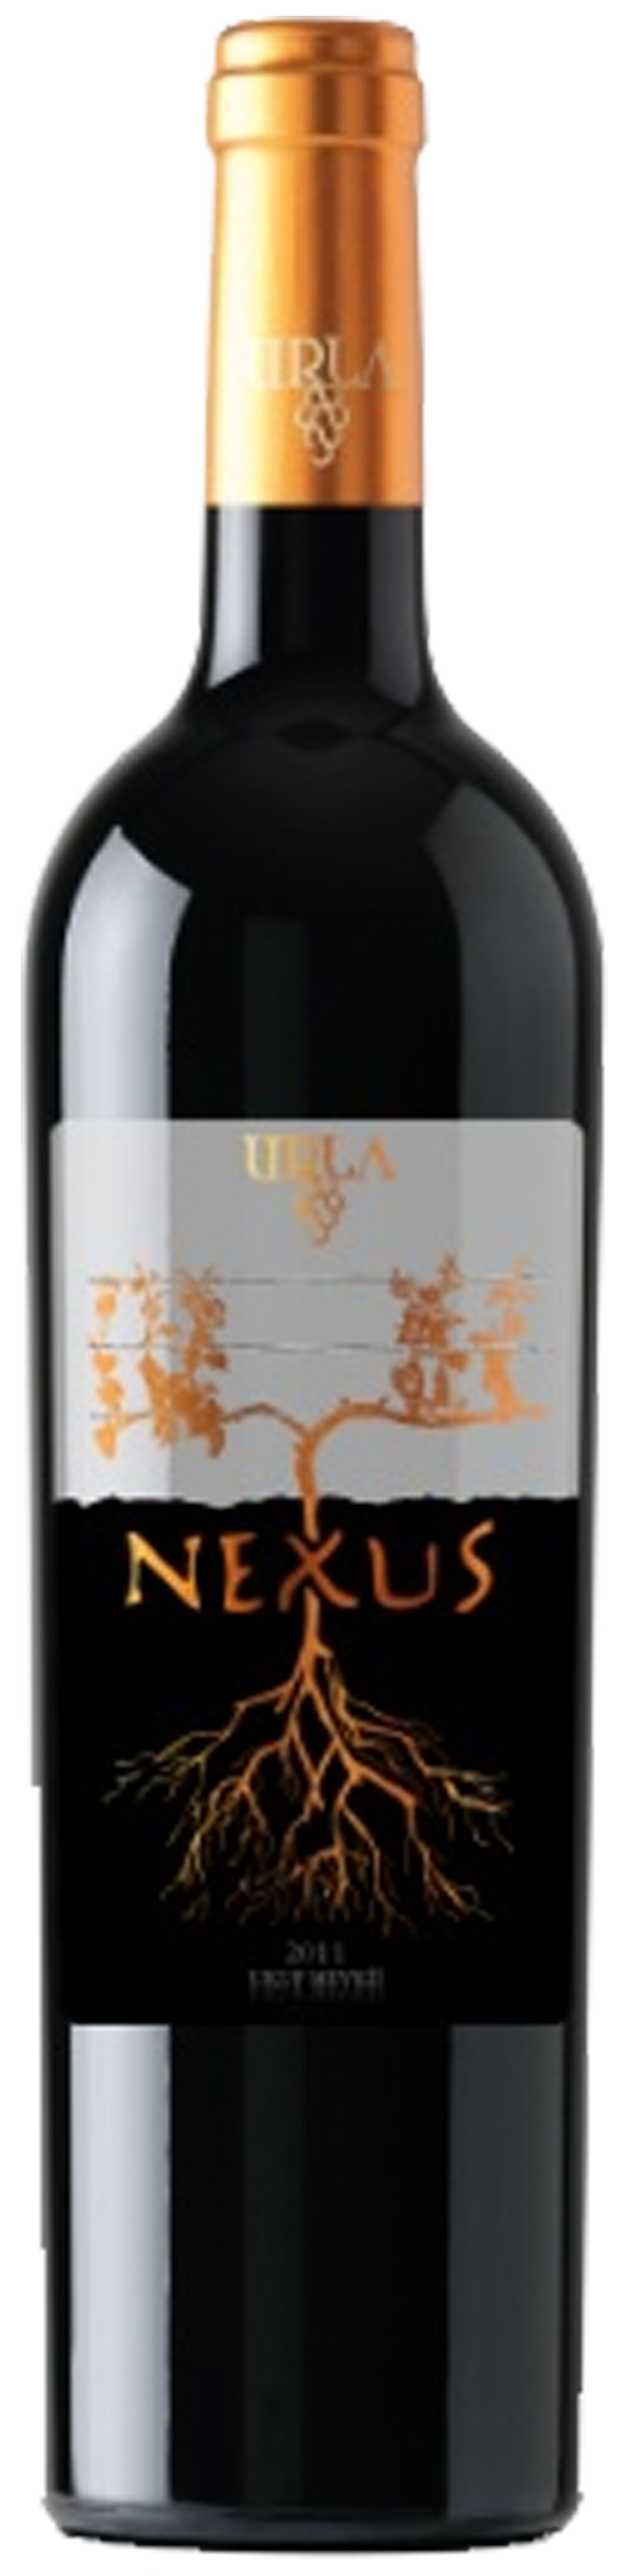 Bottle shot of 2011 Nexus